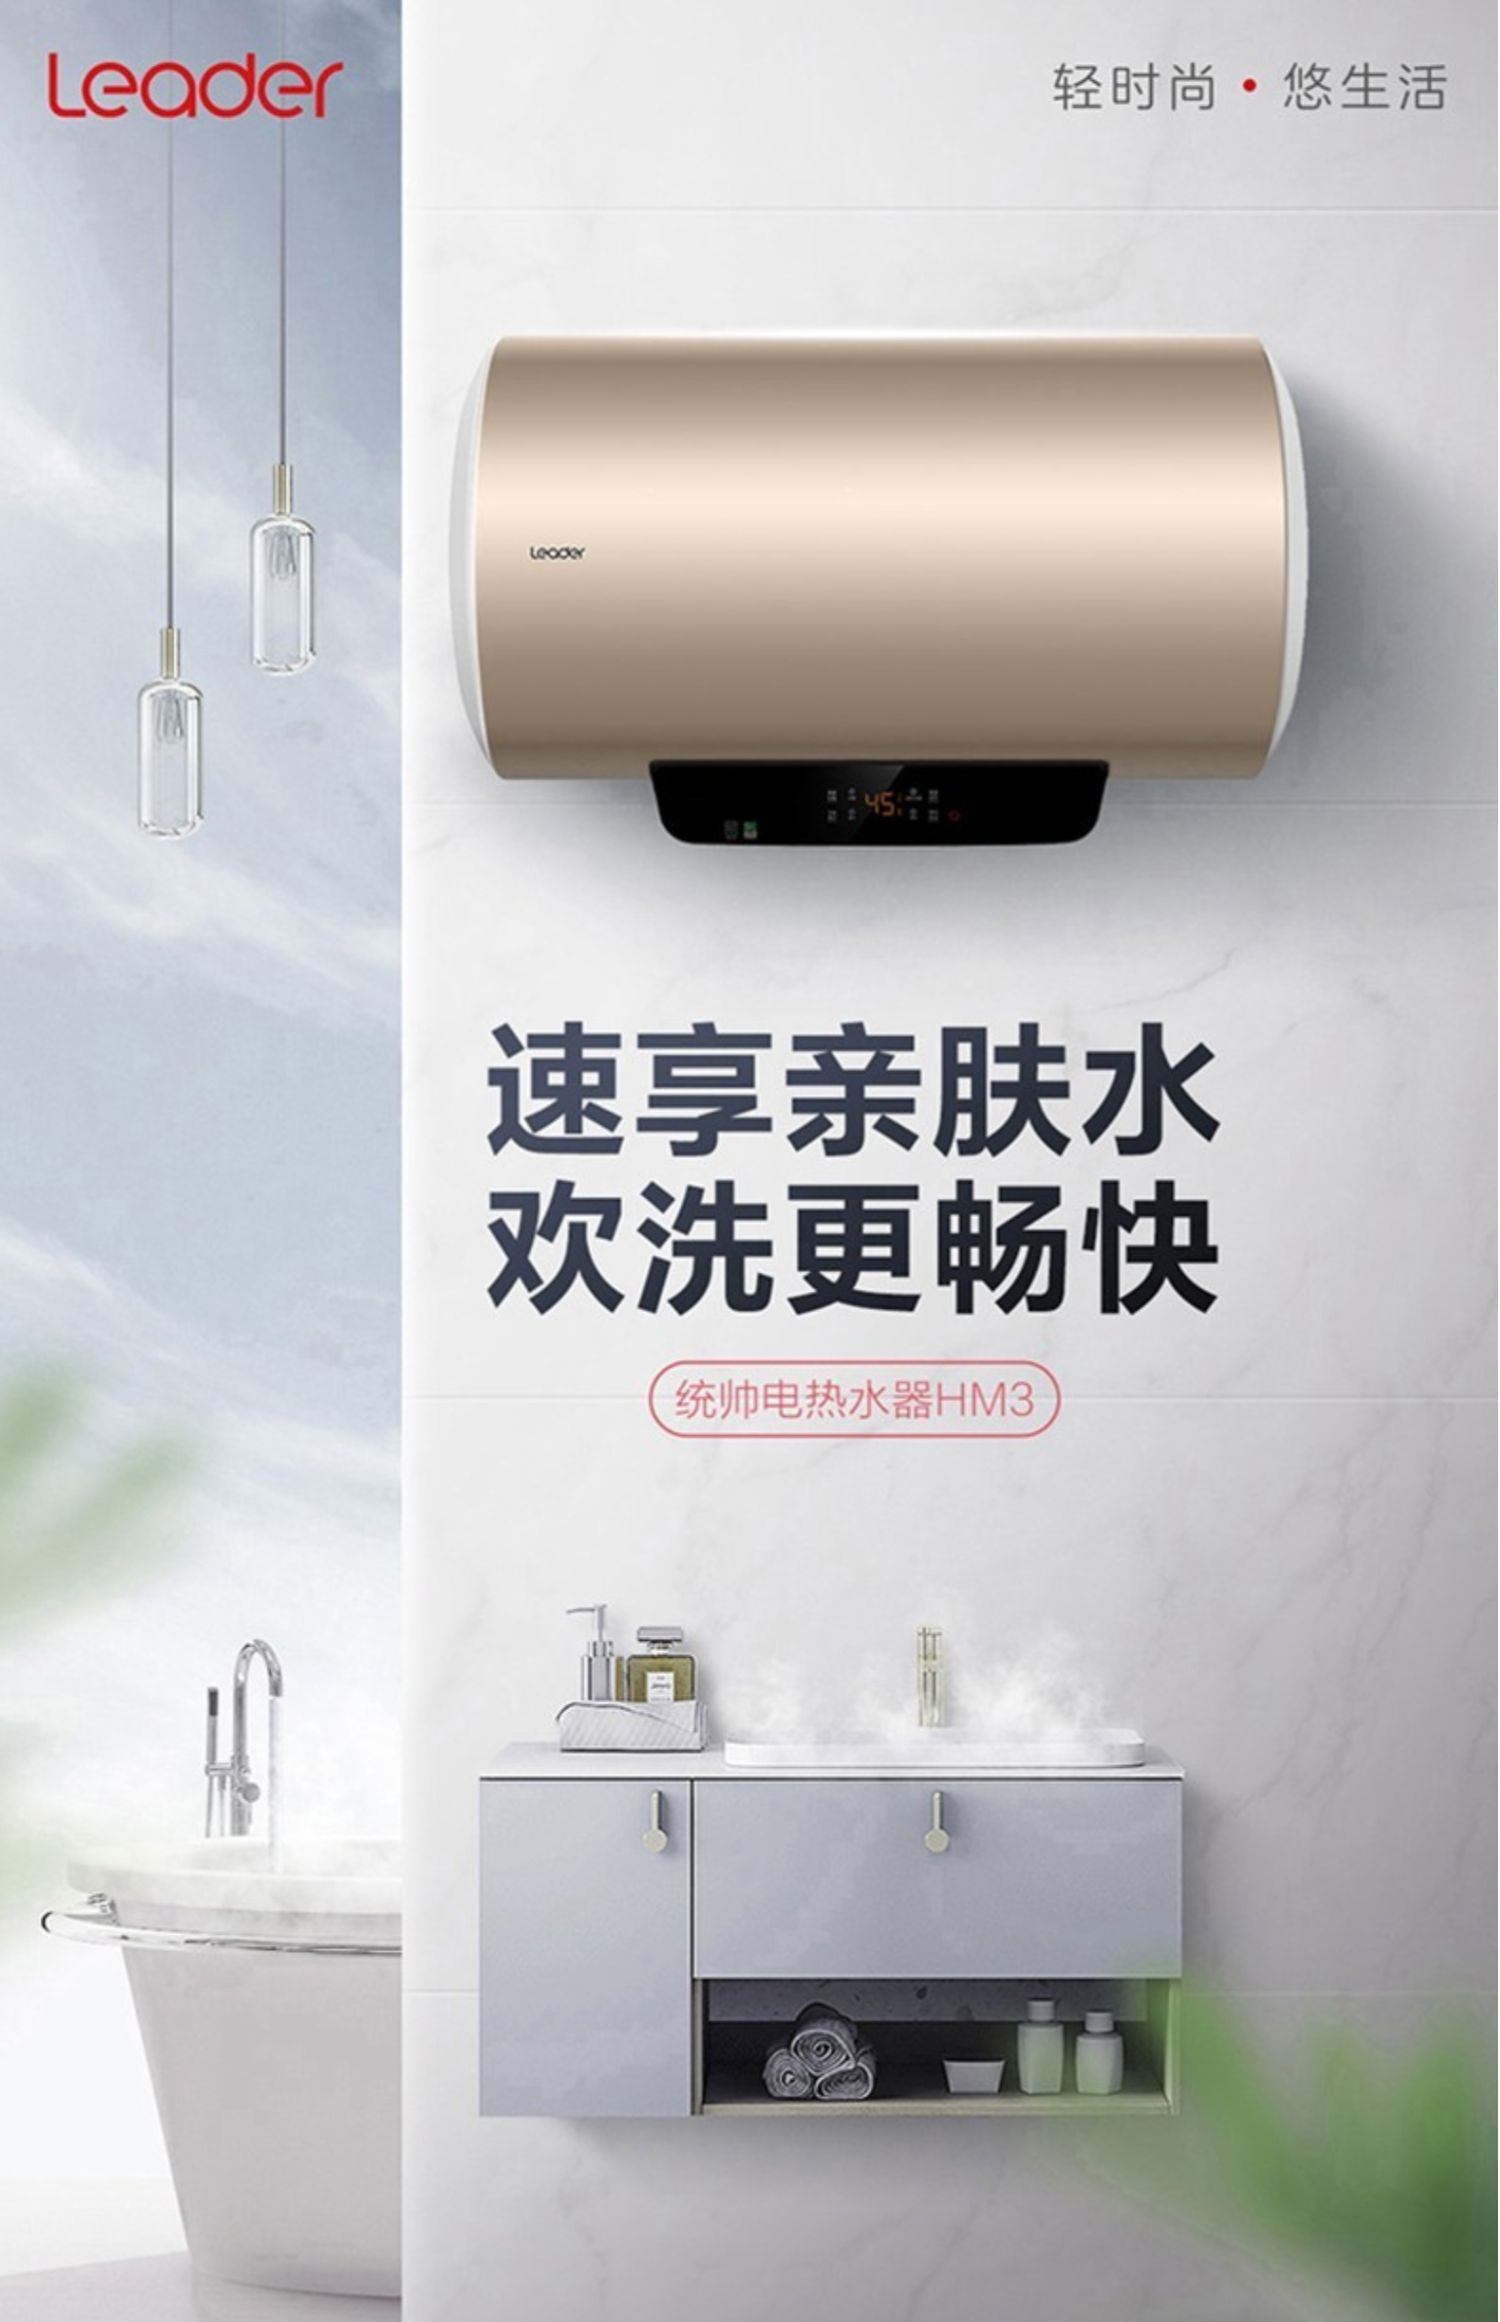 海尔热水器广告语图片